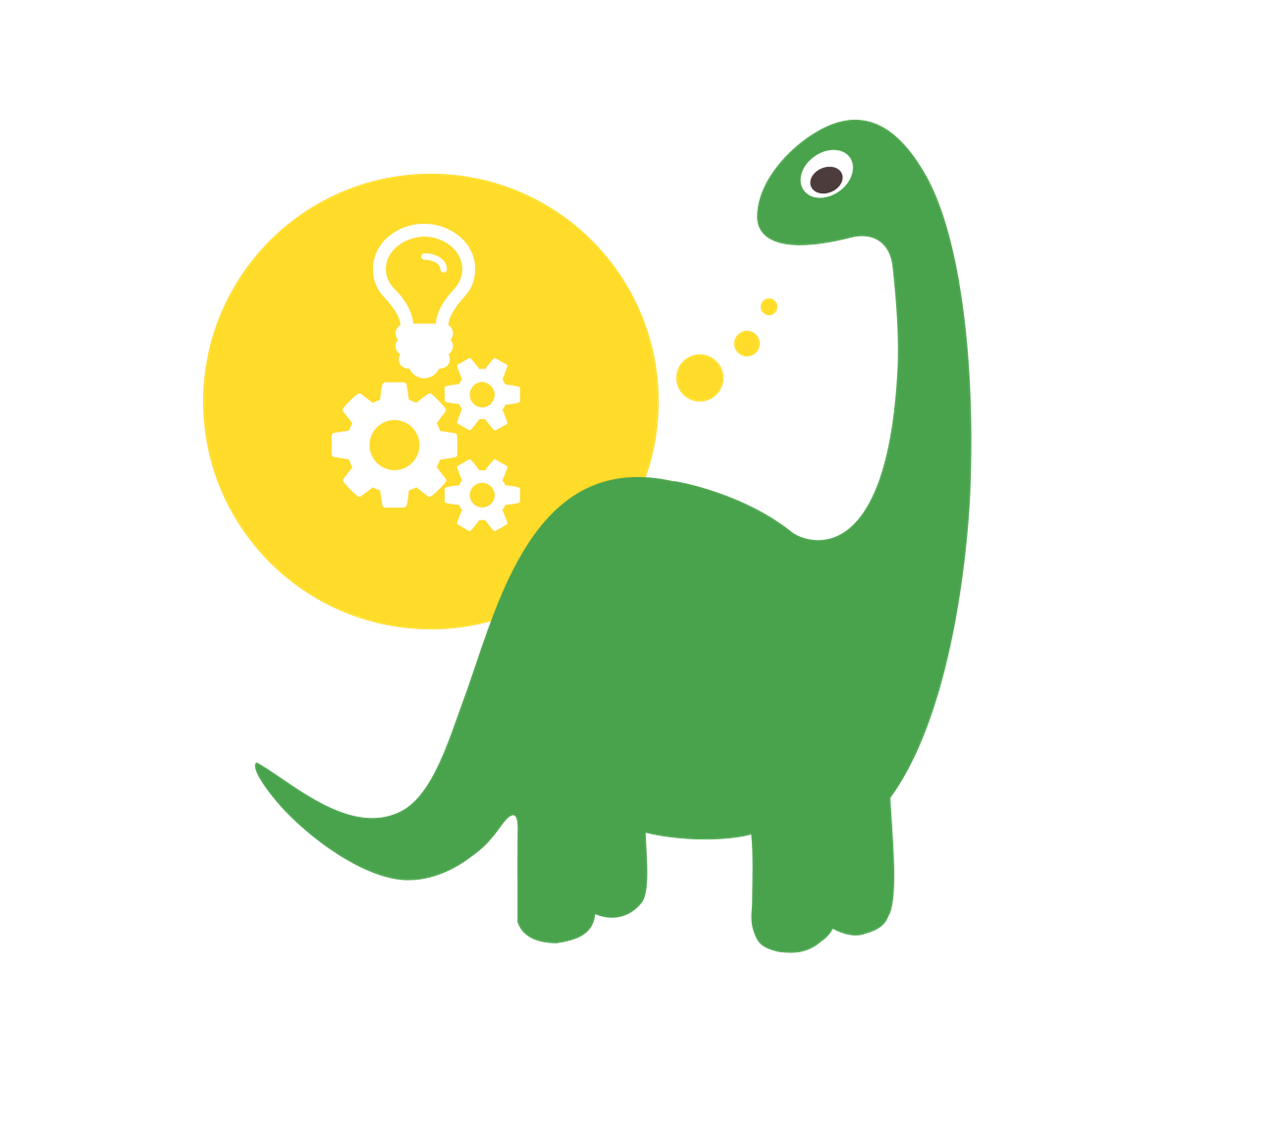 A Digital Design Manifesto on Innovation & Dinosaurs